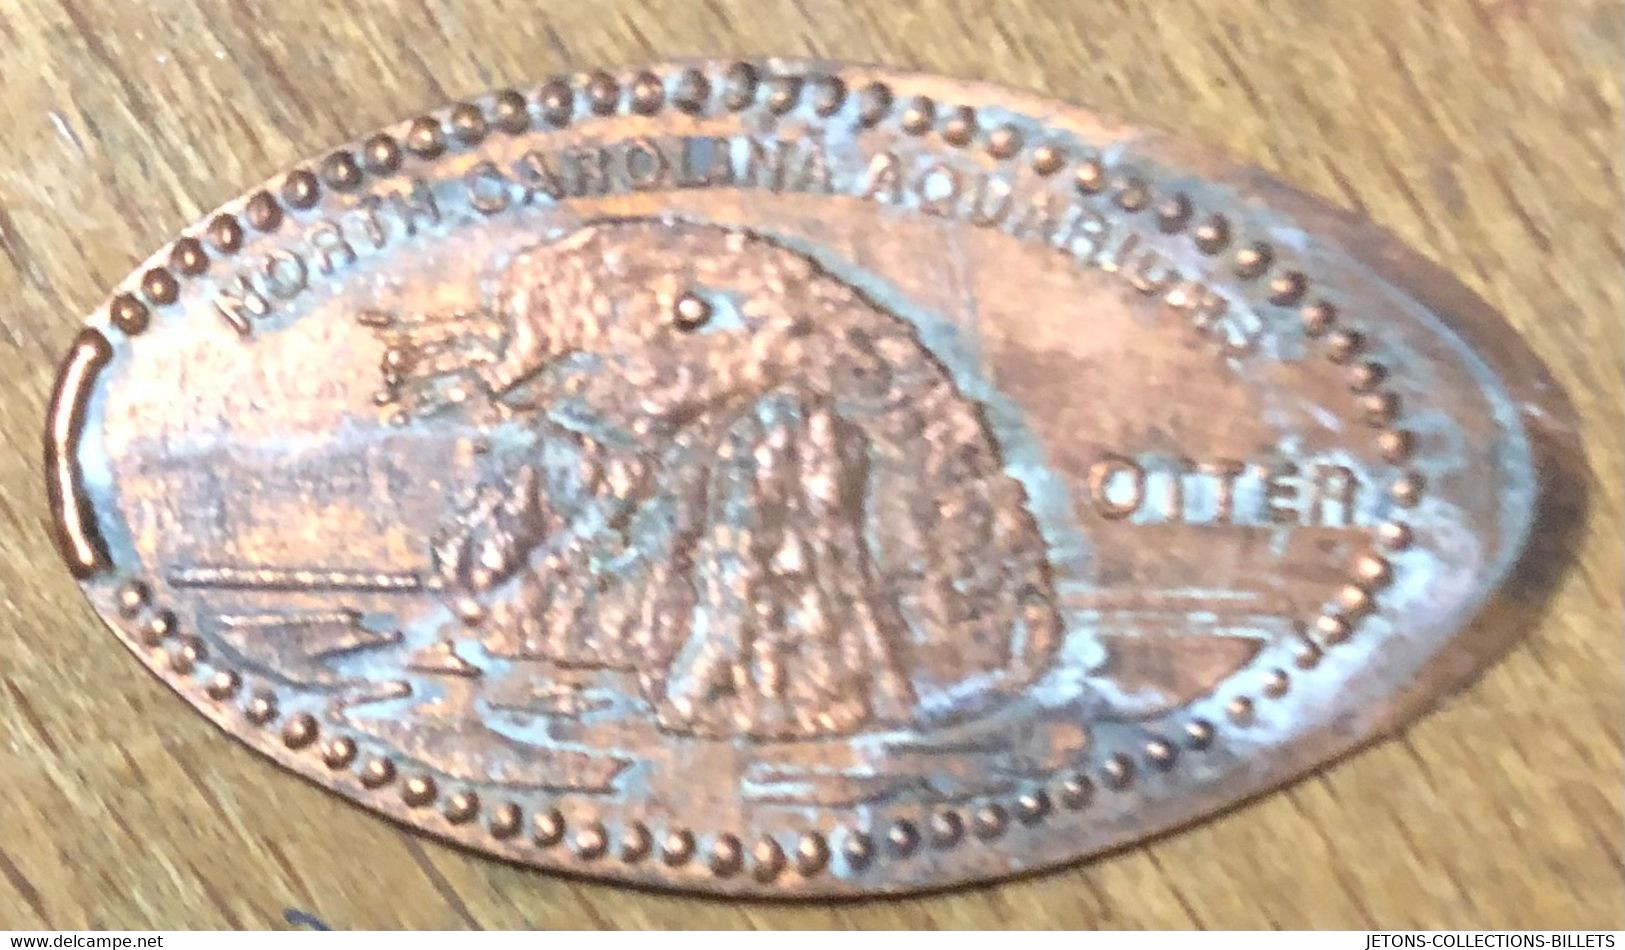 ÉTATS-UNIS USA NORTH CAROLINA AQUARIUMS OTTER PIÈCE ÉCRASÉE PENNY ELONGATED COIN MEDAILLE TOURISTIQUE MEDALS TOKENS - Souvenirmunten (elongated Coins)